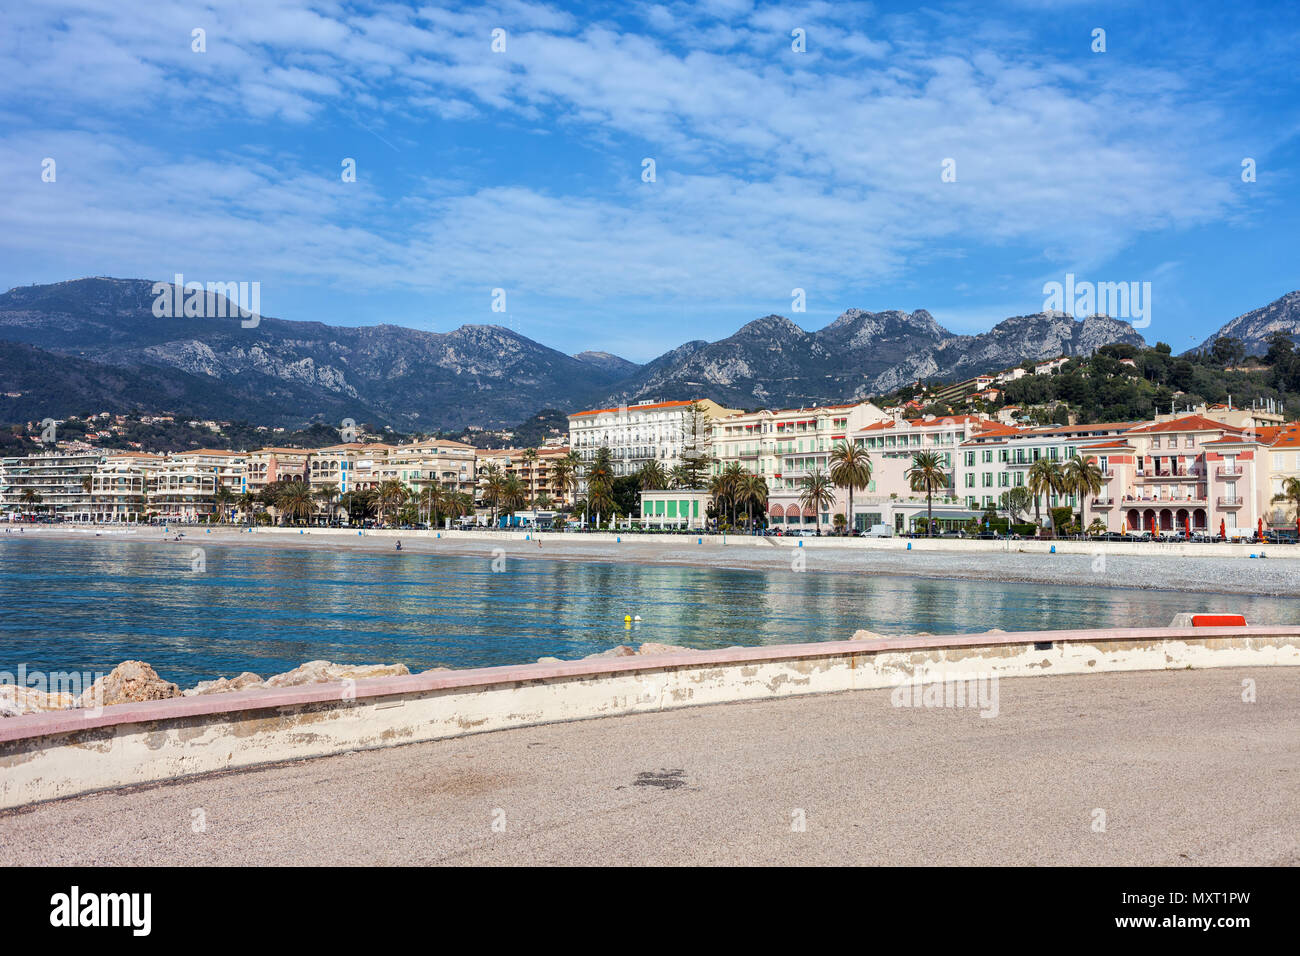 Menton città skyline al Mare Mediterraneo in Francia, resort sulla Costa Azzurra - Cote d'Azur, Alpes Maritimes Foto Stock